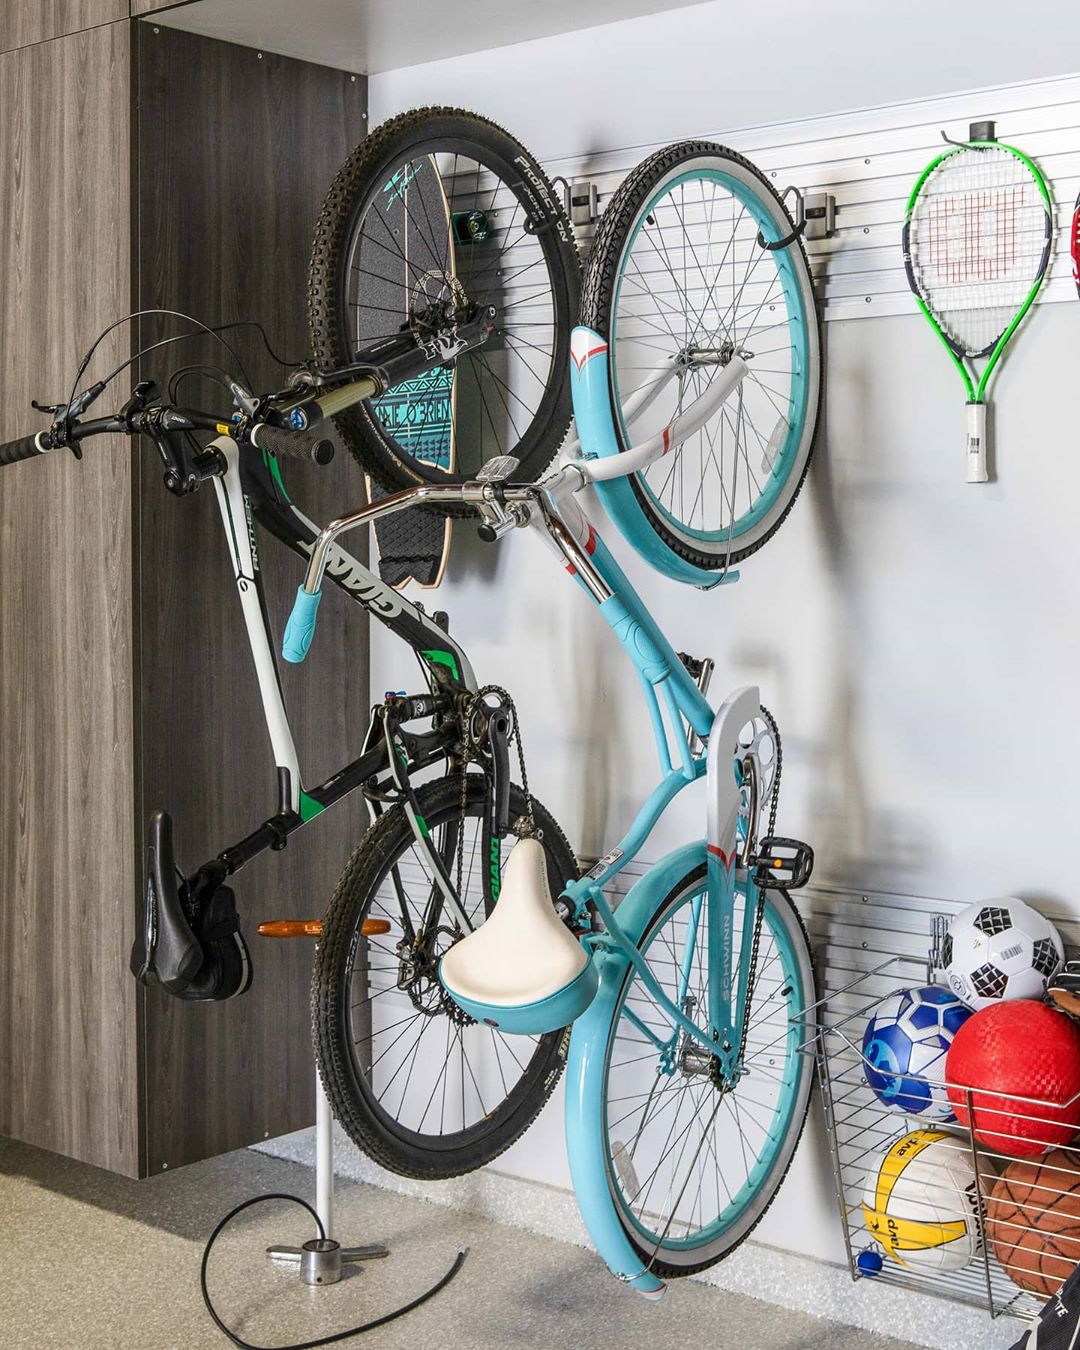 Sports Equipment in Wire Storage in Garage. Photo by Instagram user @tailoredbymonica